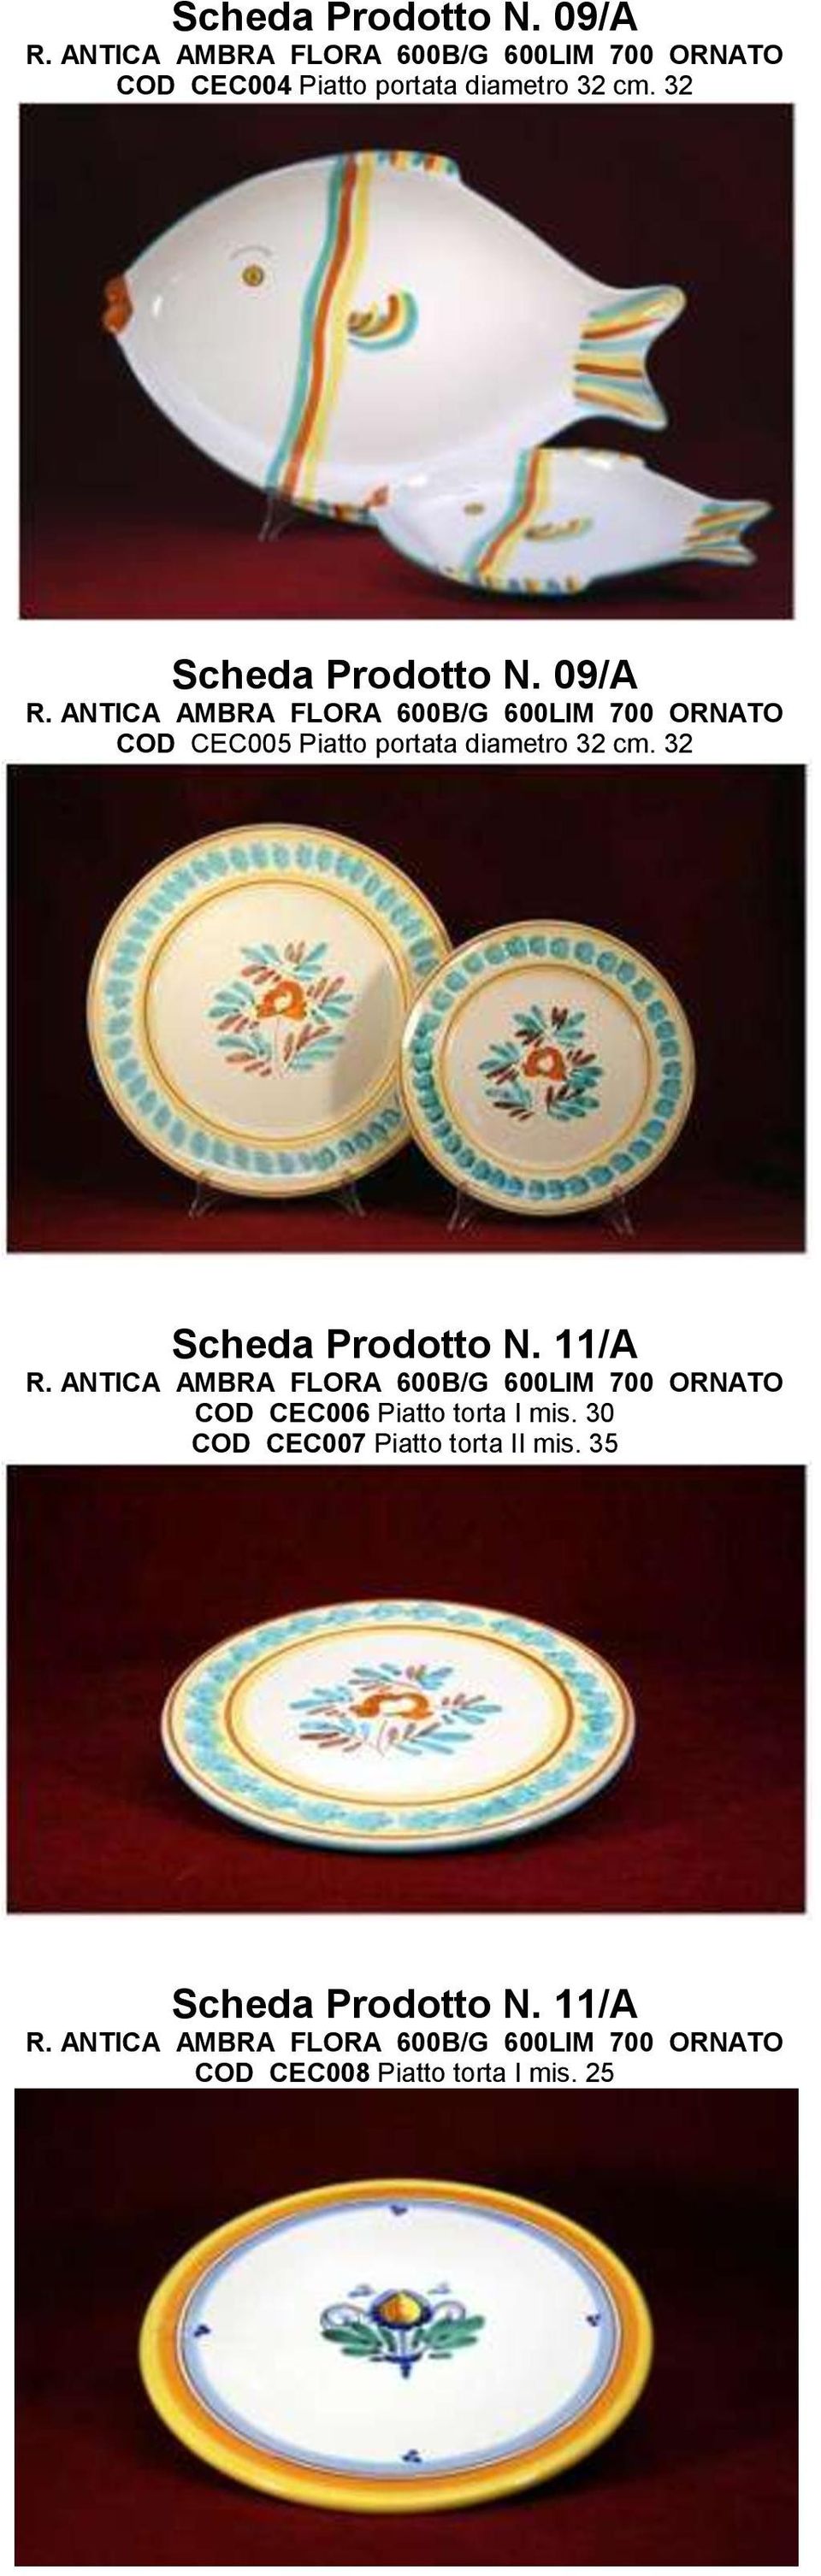 32 Scheda Prodotto N. 11/A COD CEC006 Piatto torta I mis.